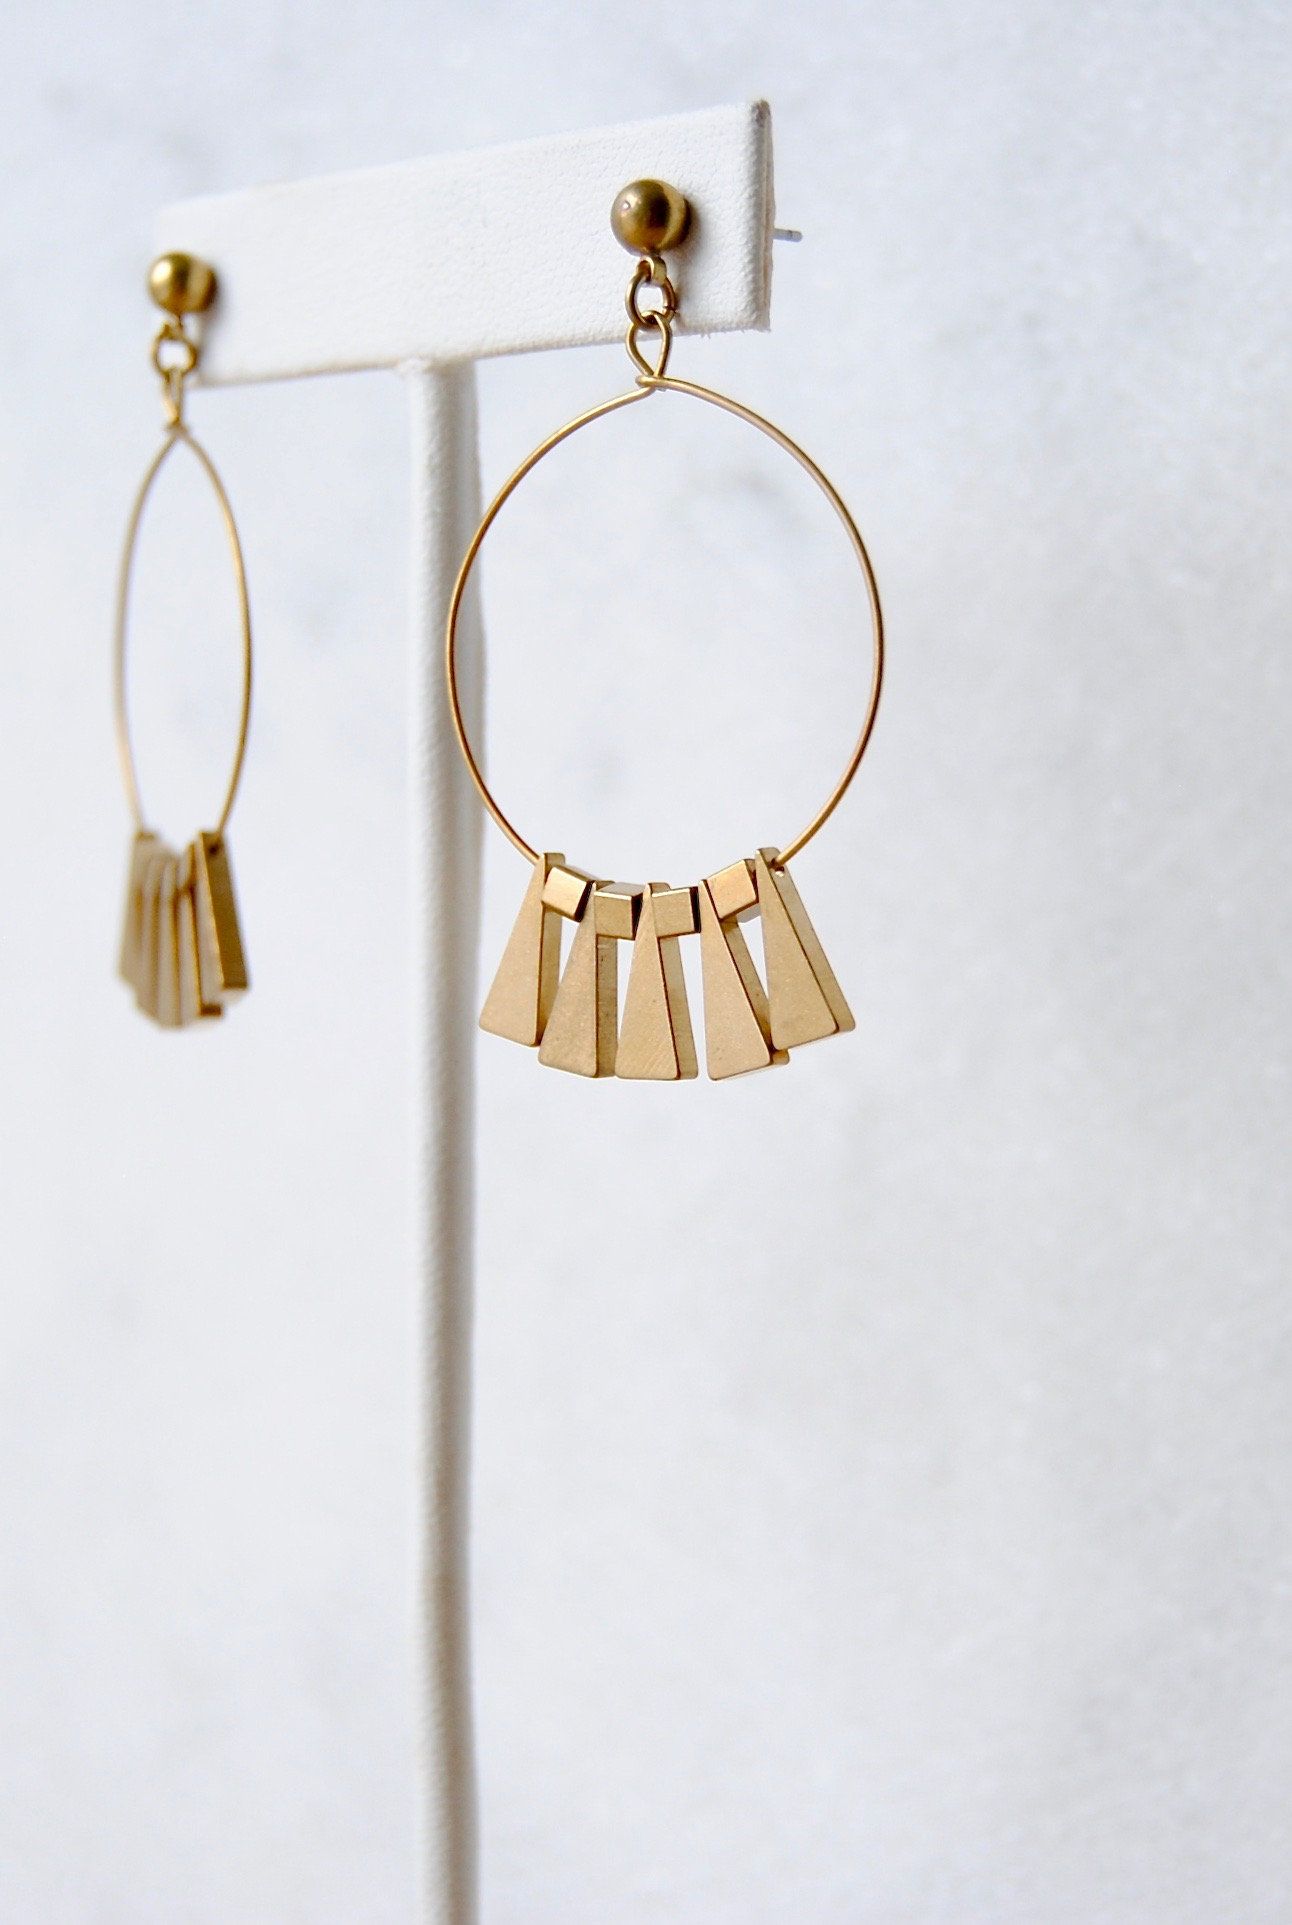 Explore the Trendy World of Boho Chic Brass Fringe Earrings